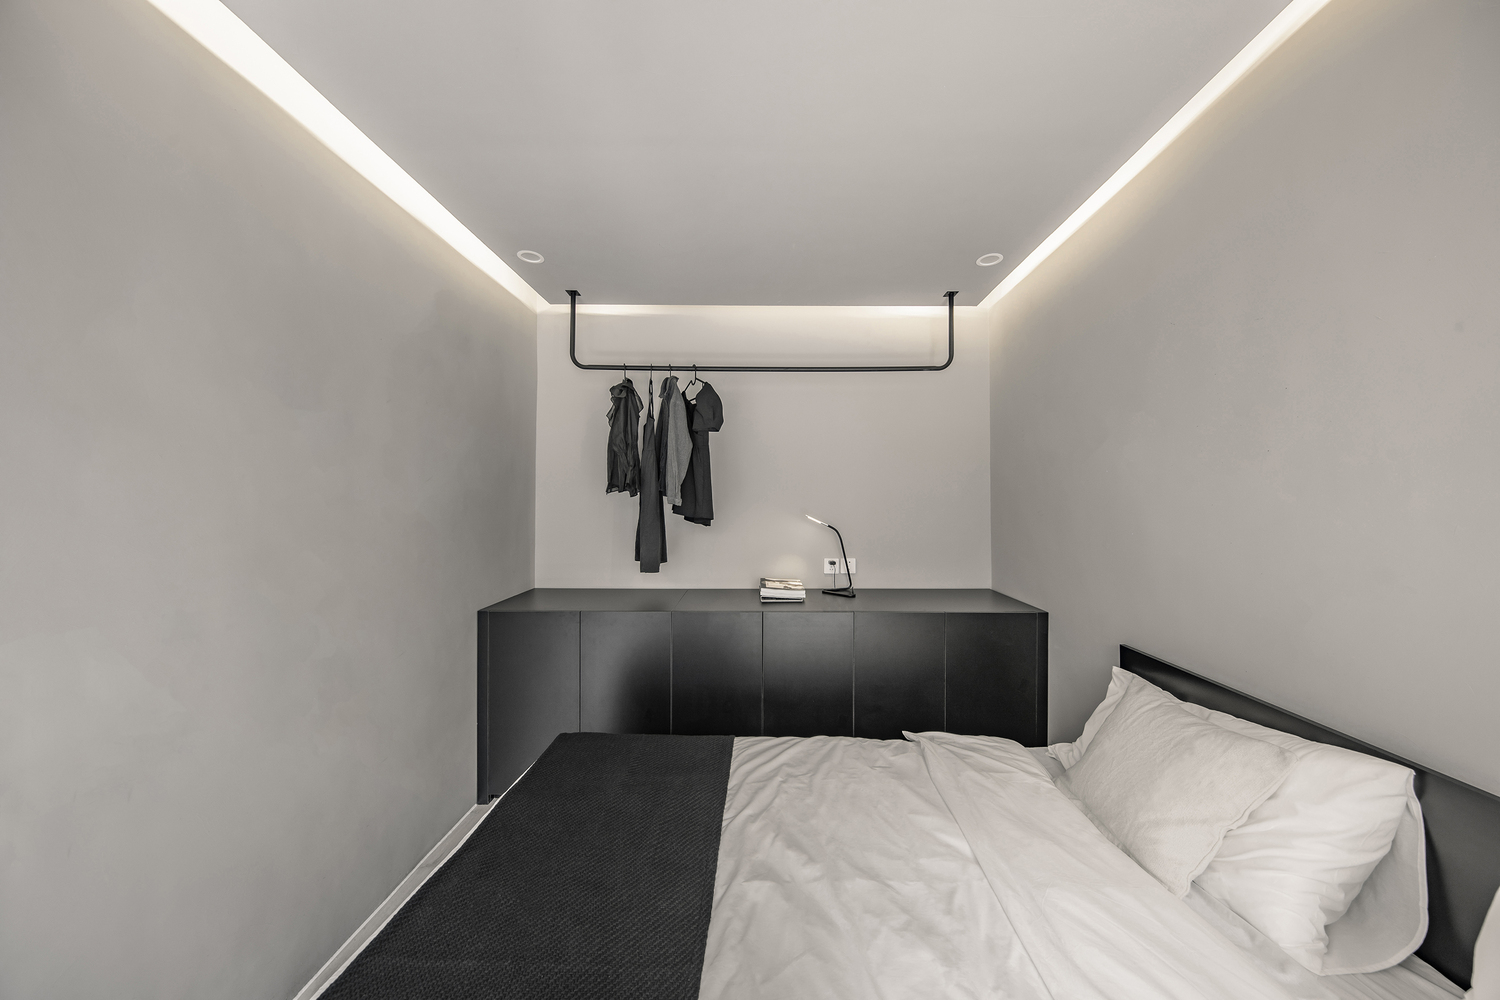 Nội thất phòng ngủ tối giản với gam màu đen - trắng cá tính.